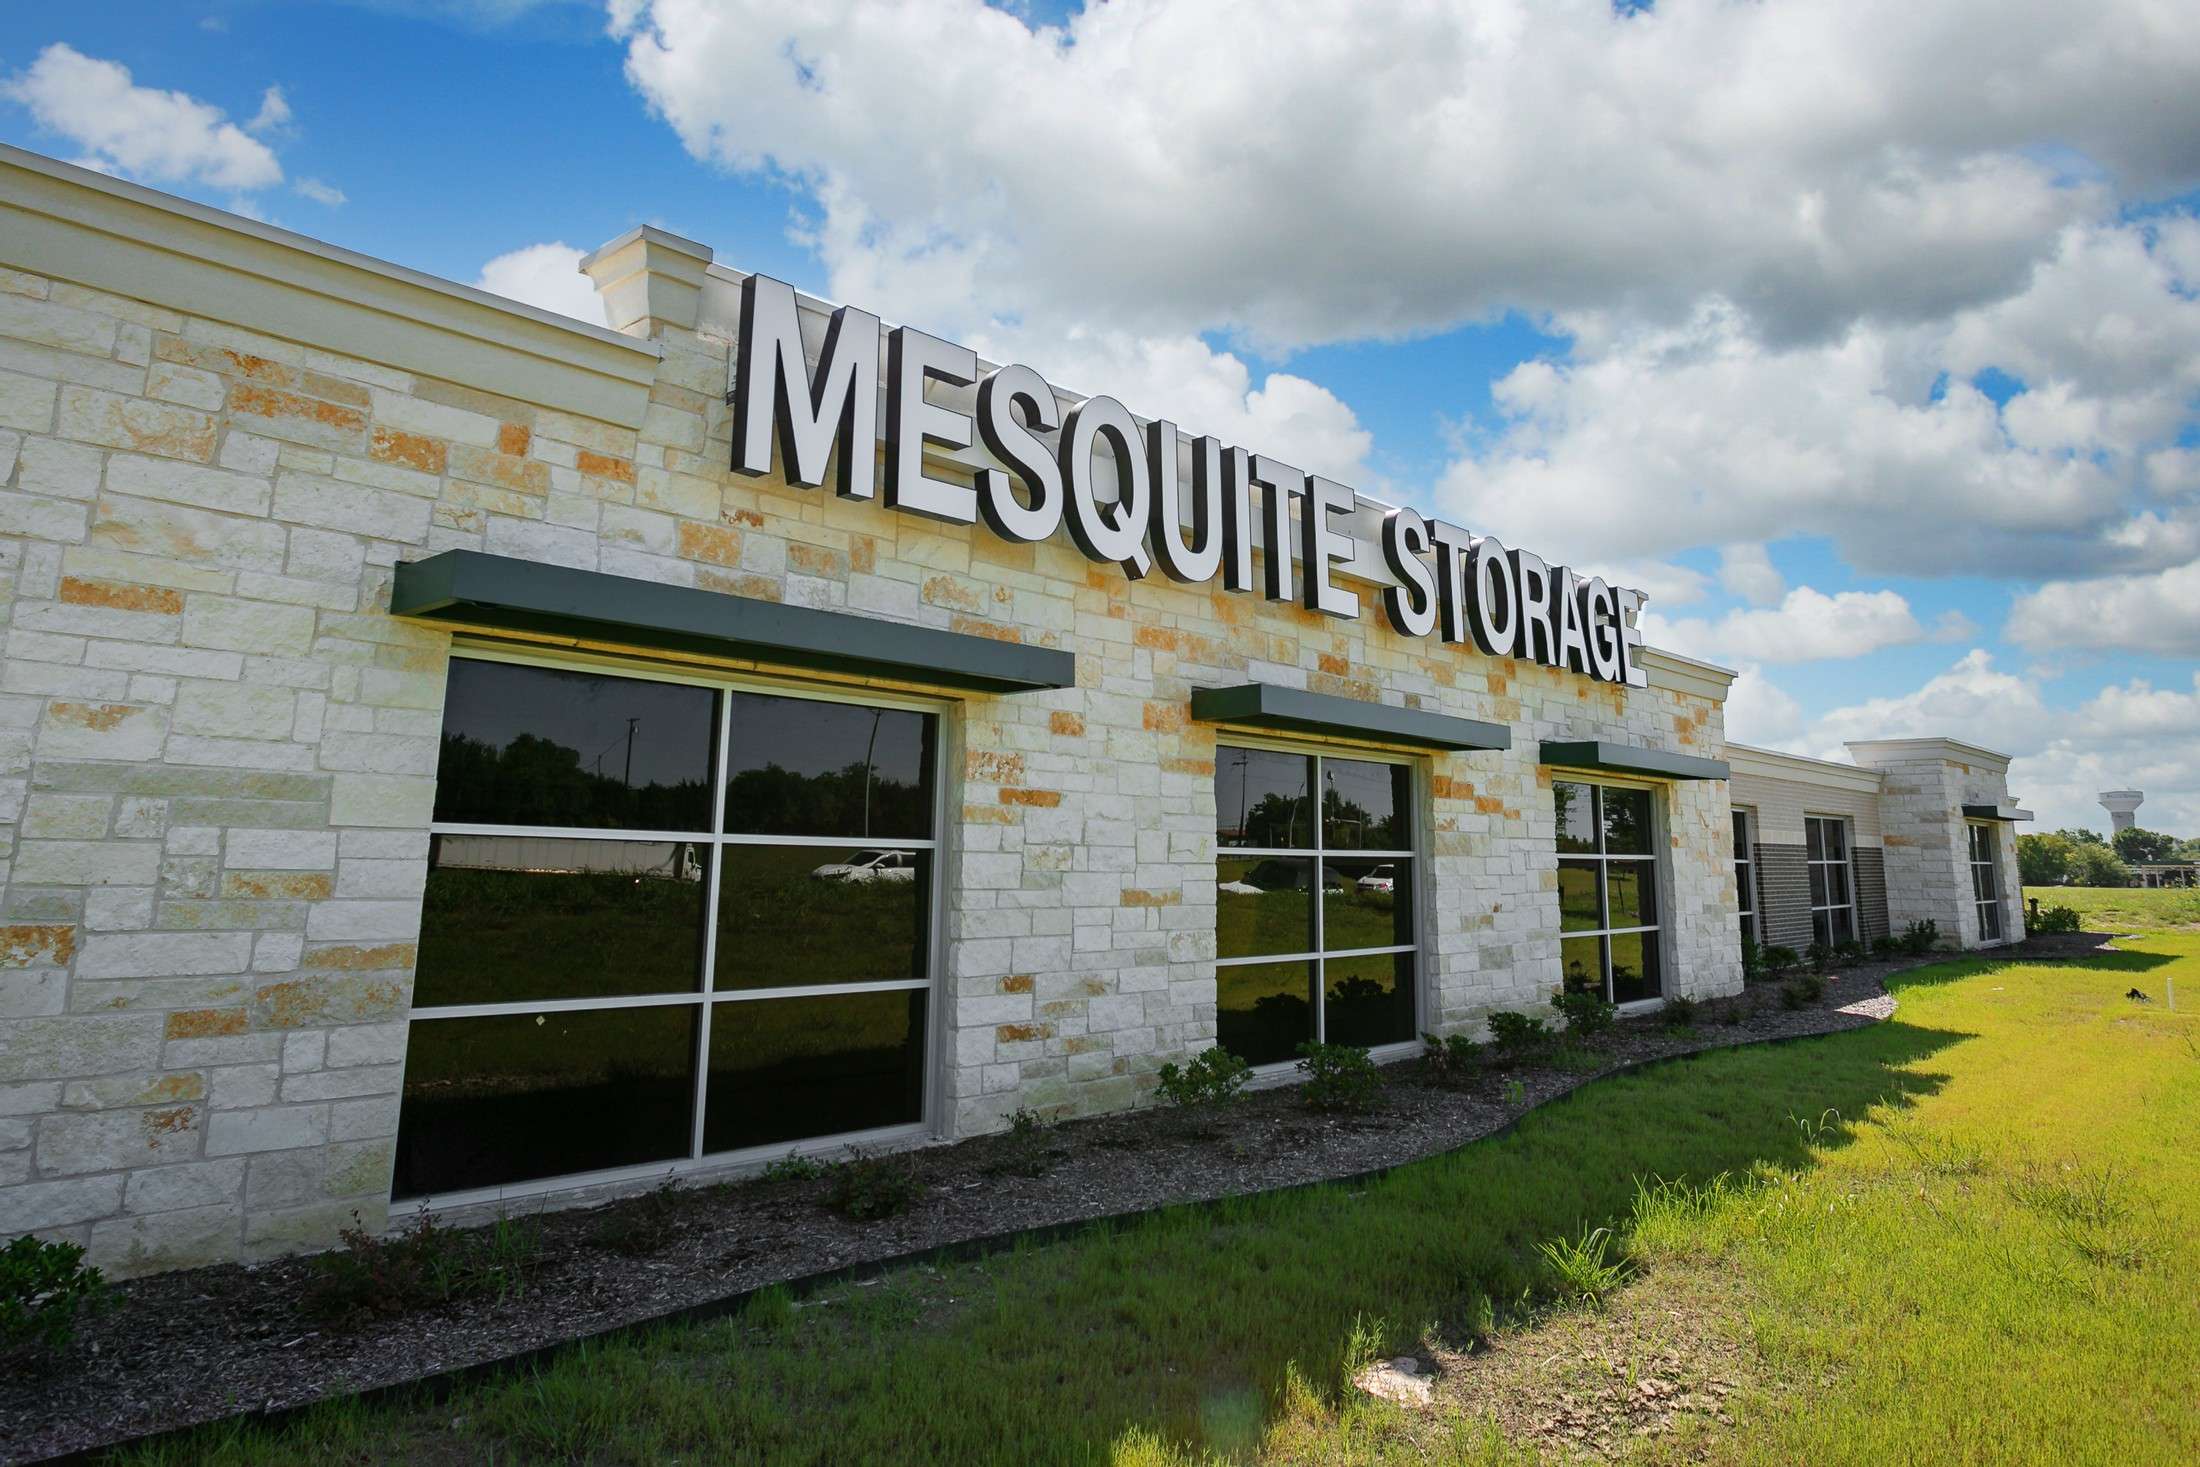 Mesquite Storage Building signage